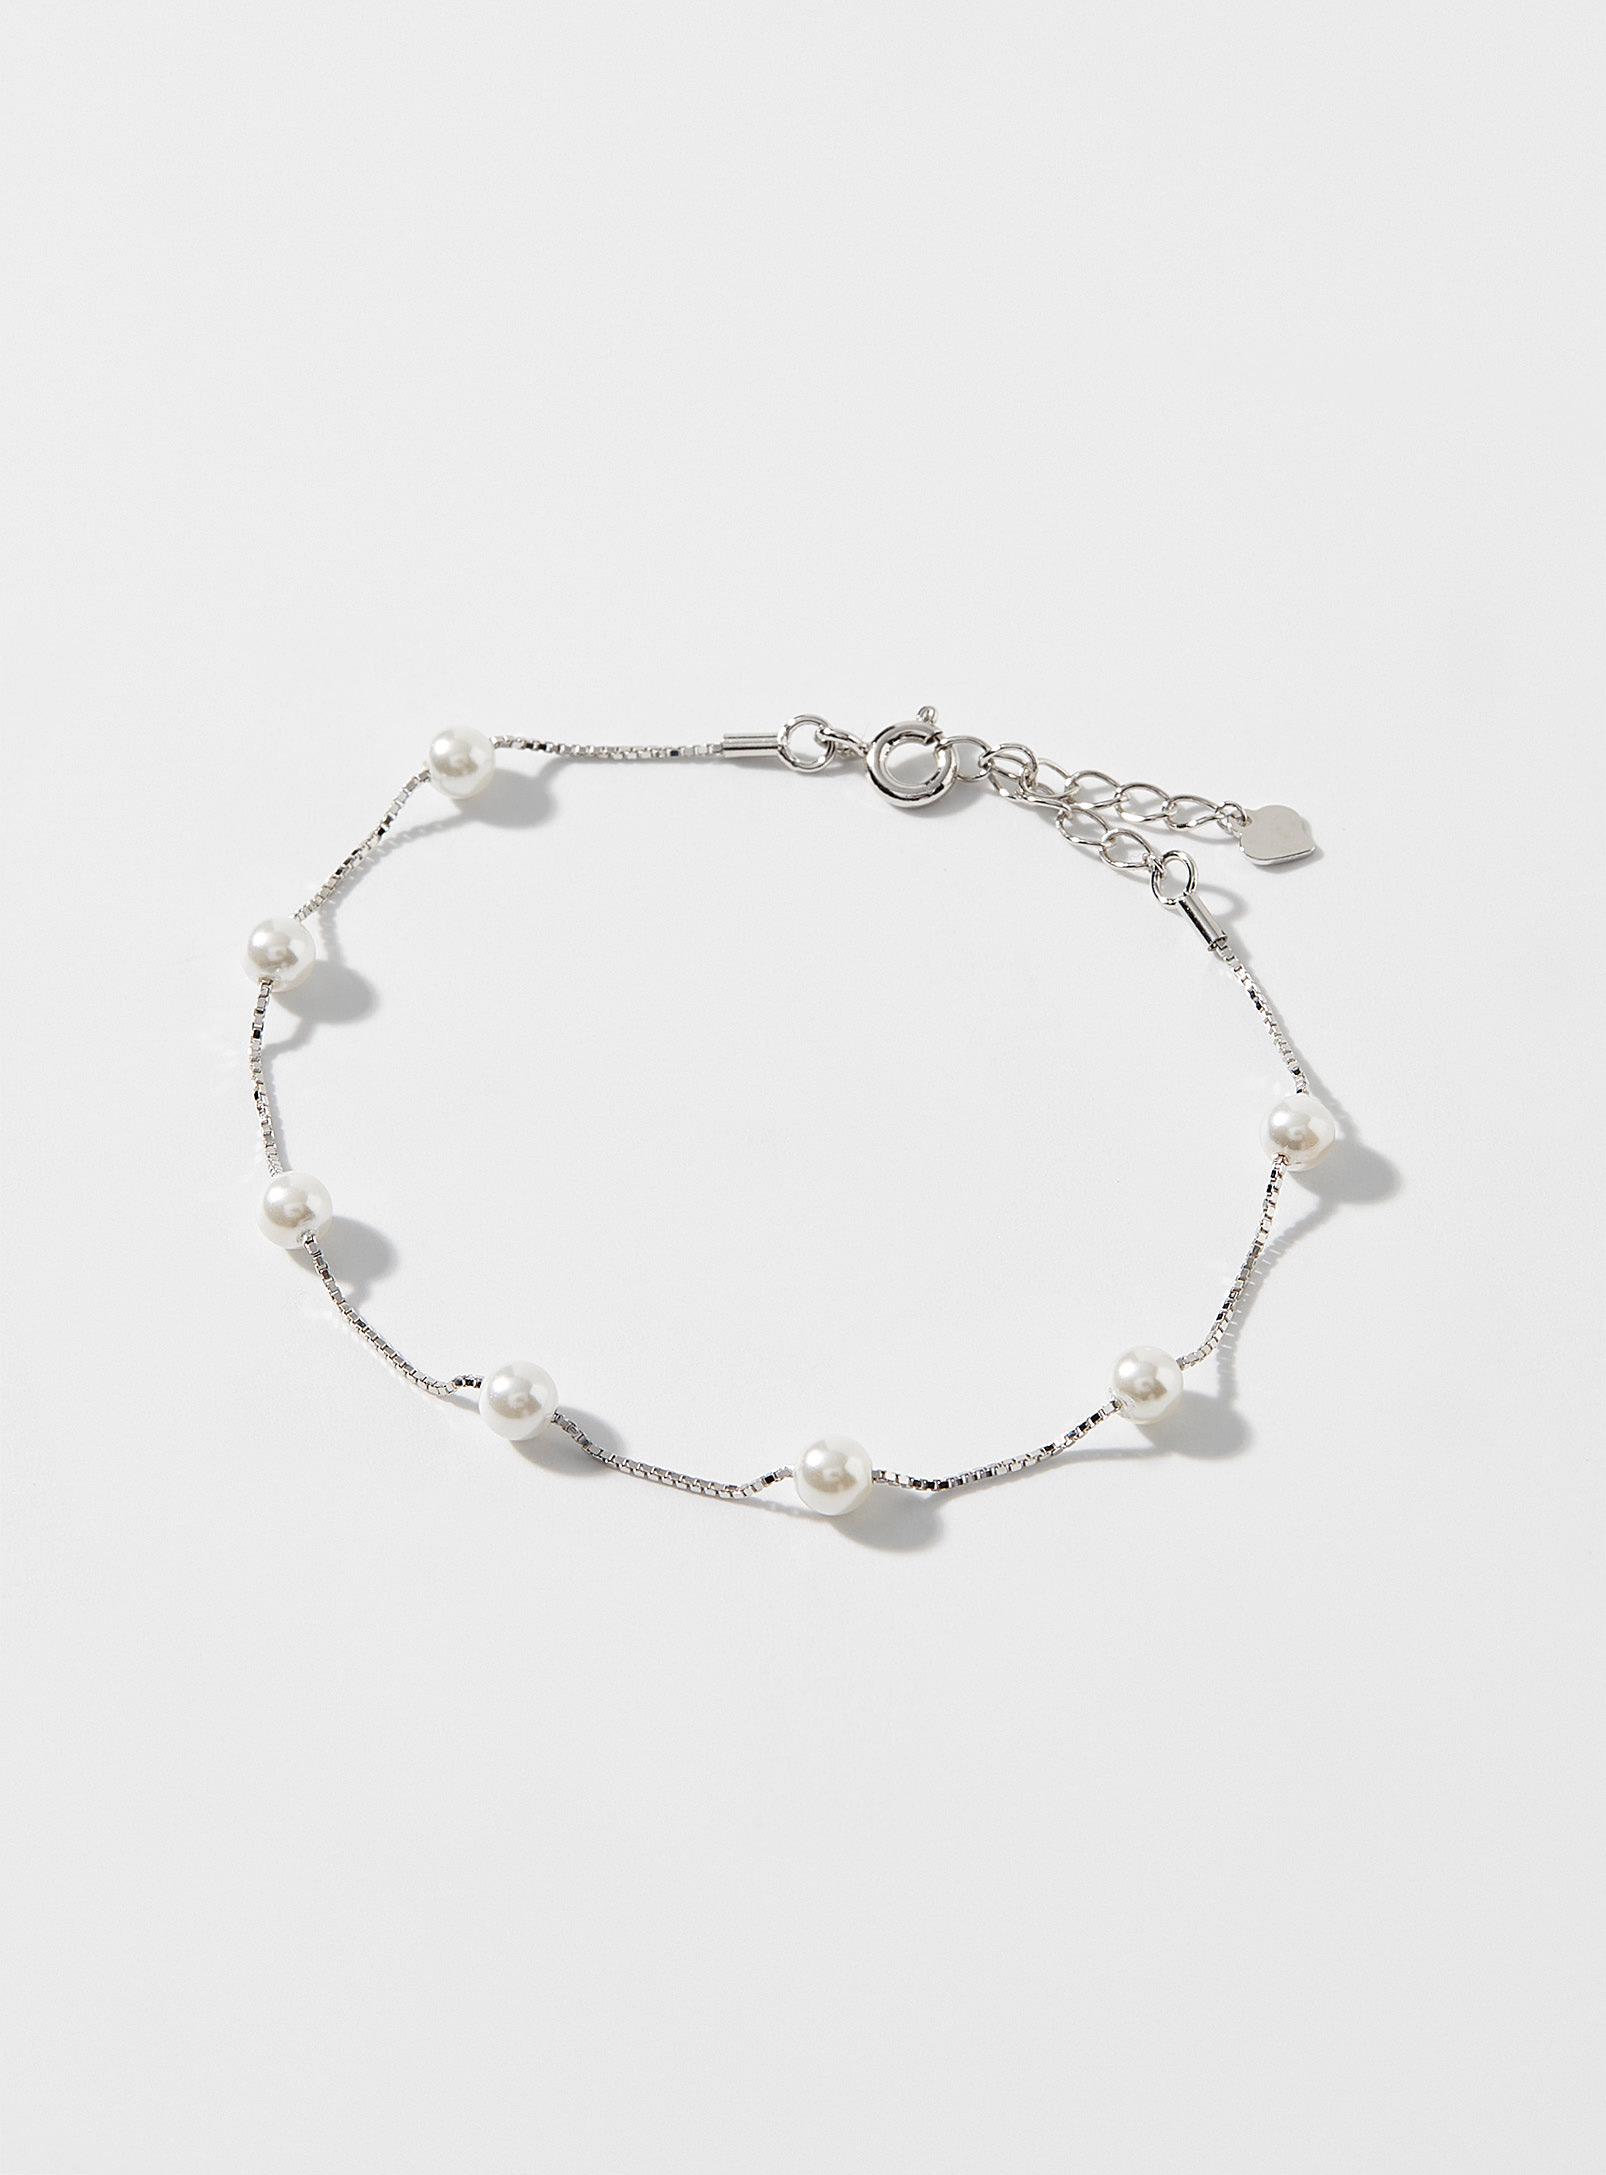 Simons - Le bracelet argent perles nacrées